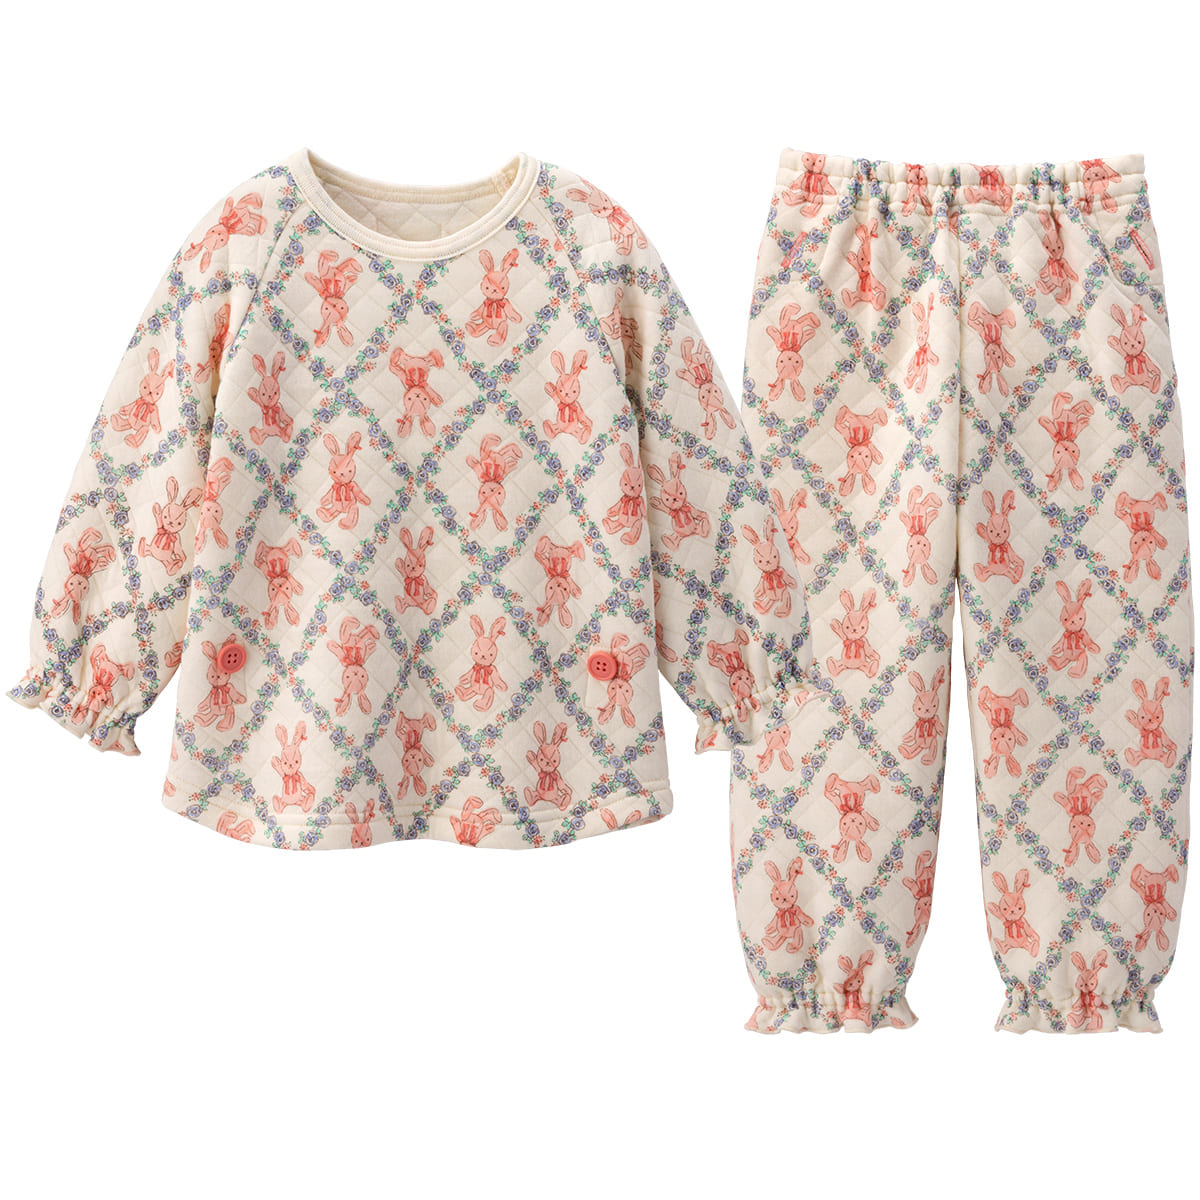 有名ブランド パジャマ 長袖 花柄 うさぎ柄 タオル生地 100サイズ